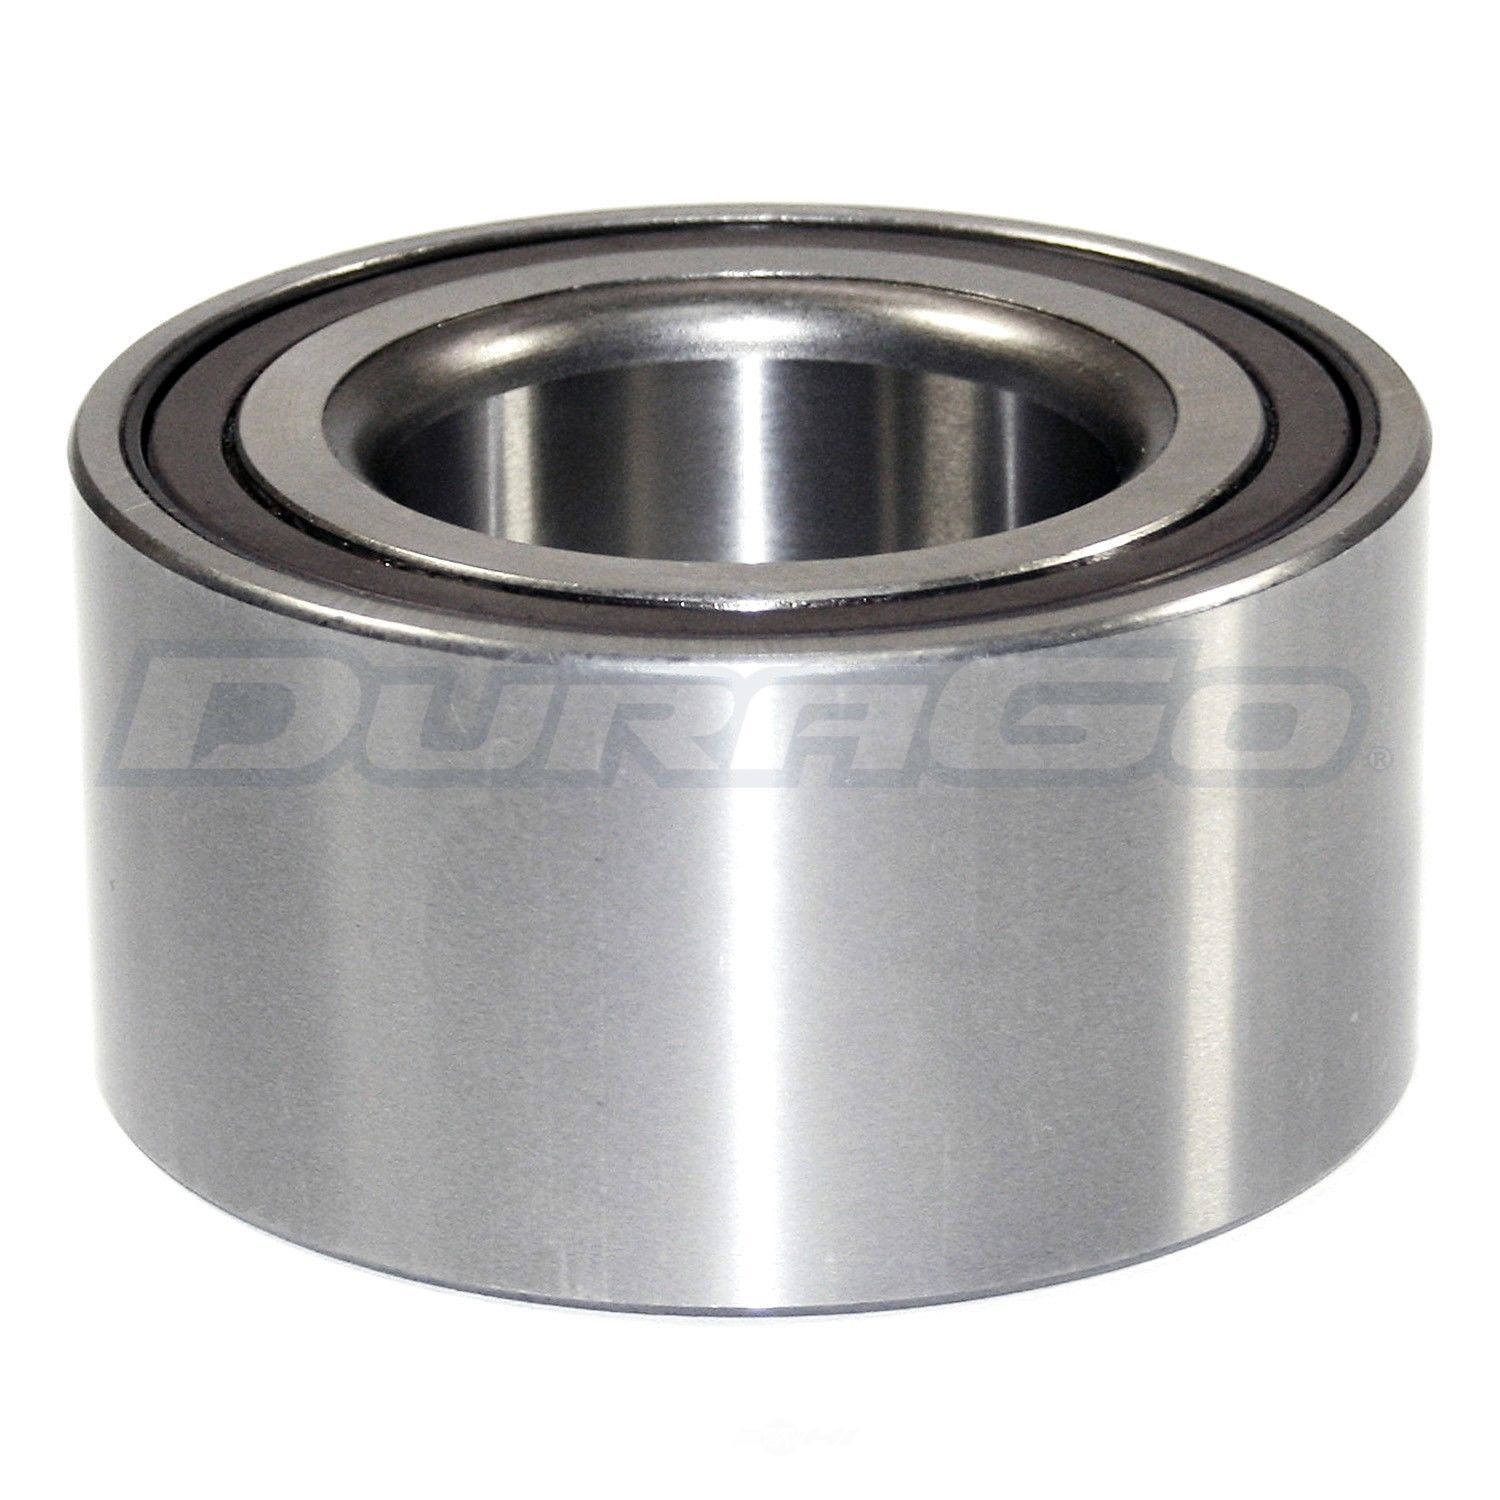 DURAGO - Wheel Bearing - D48 295-10081